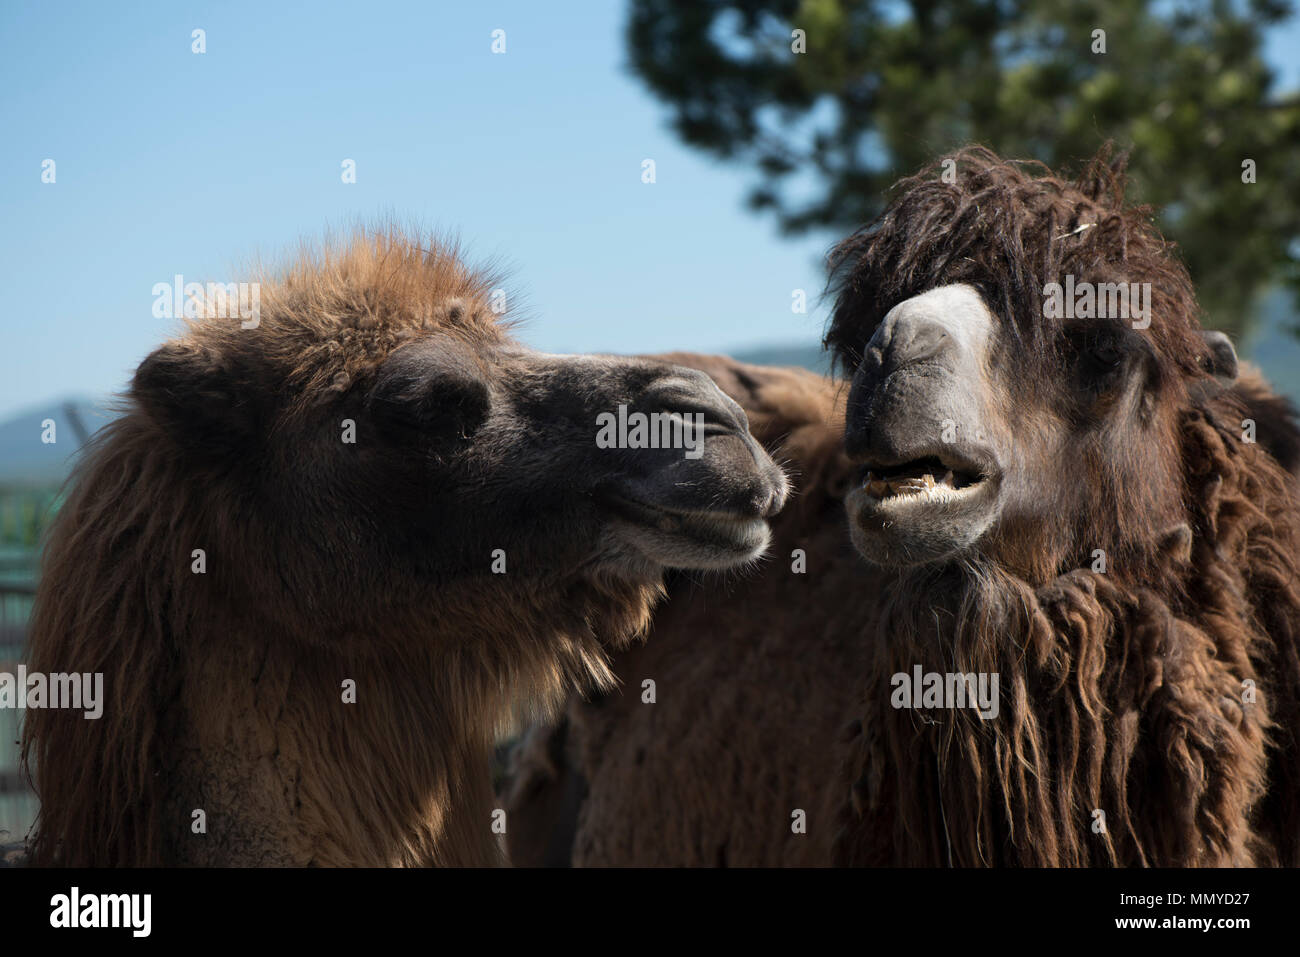 Zwei 2-Humped Kamele stehen und schauen sich an Vor dem Hintergrund der Berge und ein Baum Stockfoto